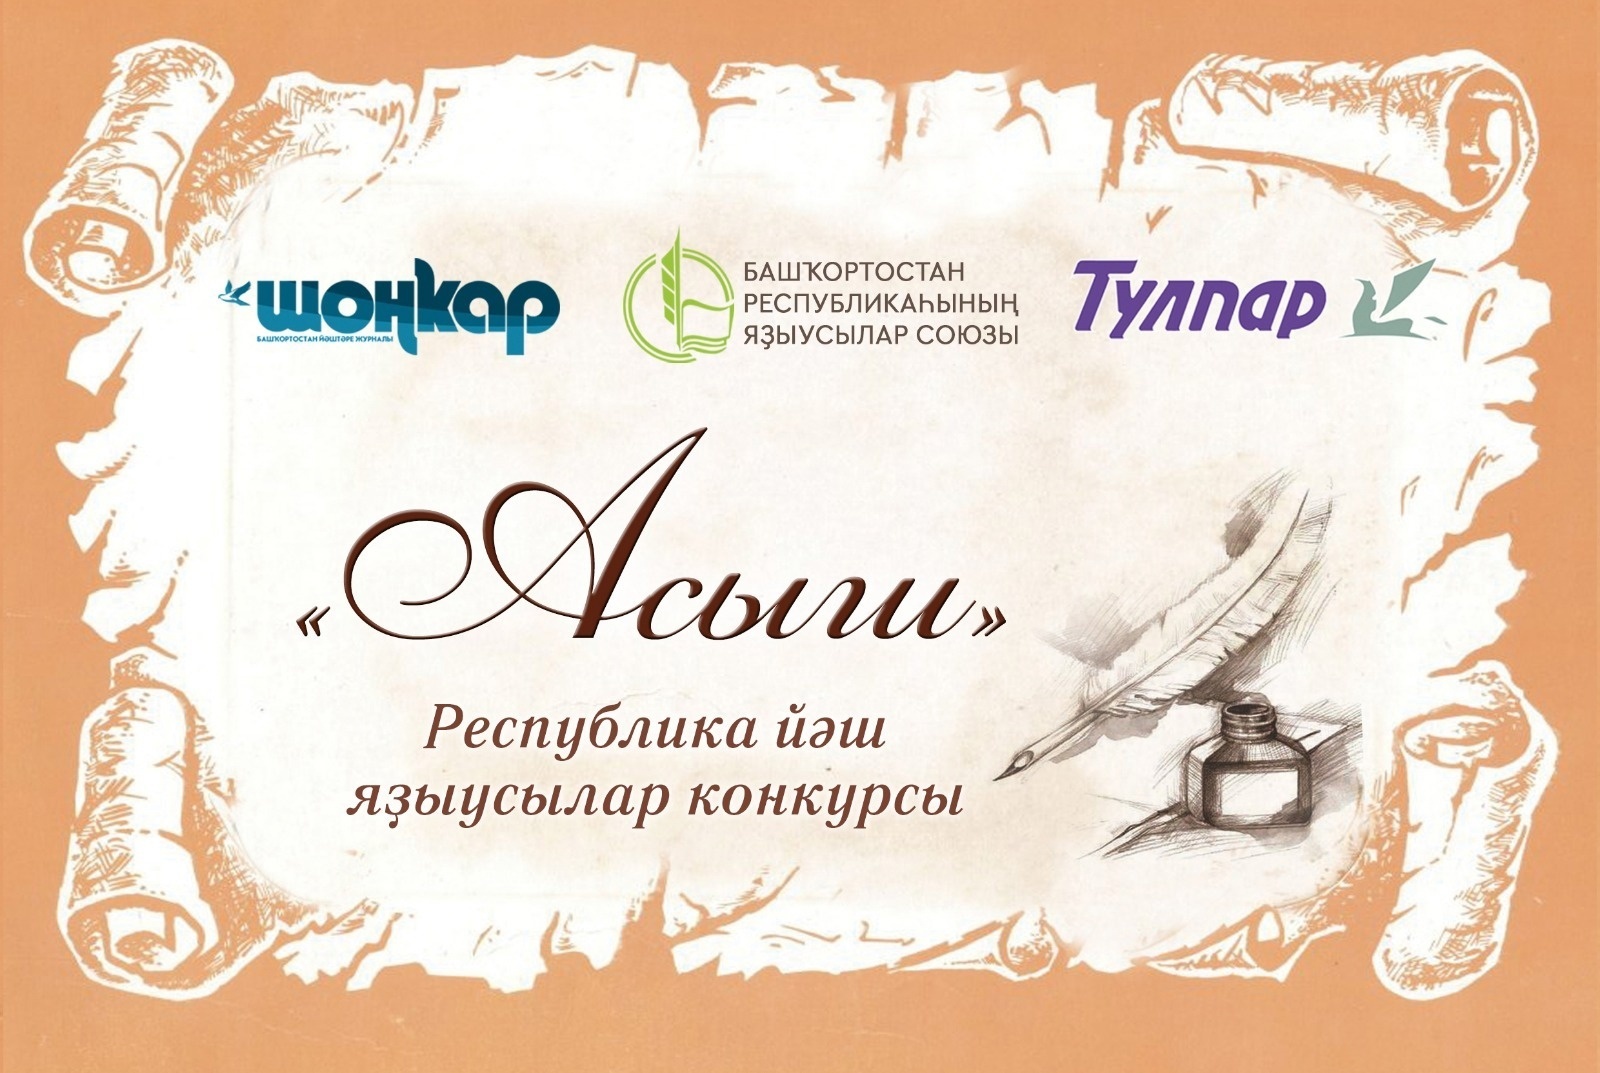 Объявлен литературный конкурс «Асыш» («Открытие») для молодых писателей*